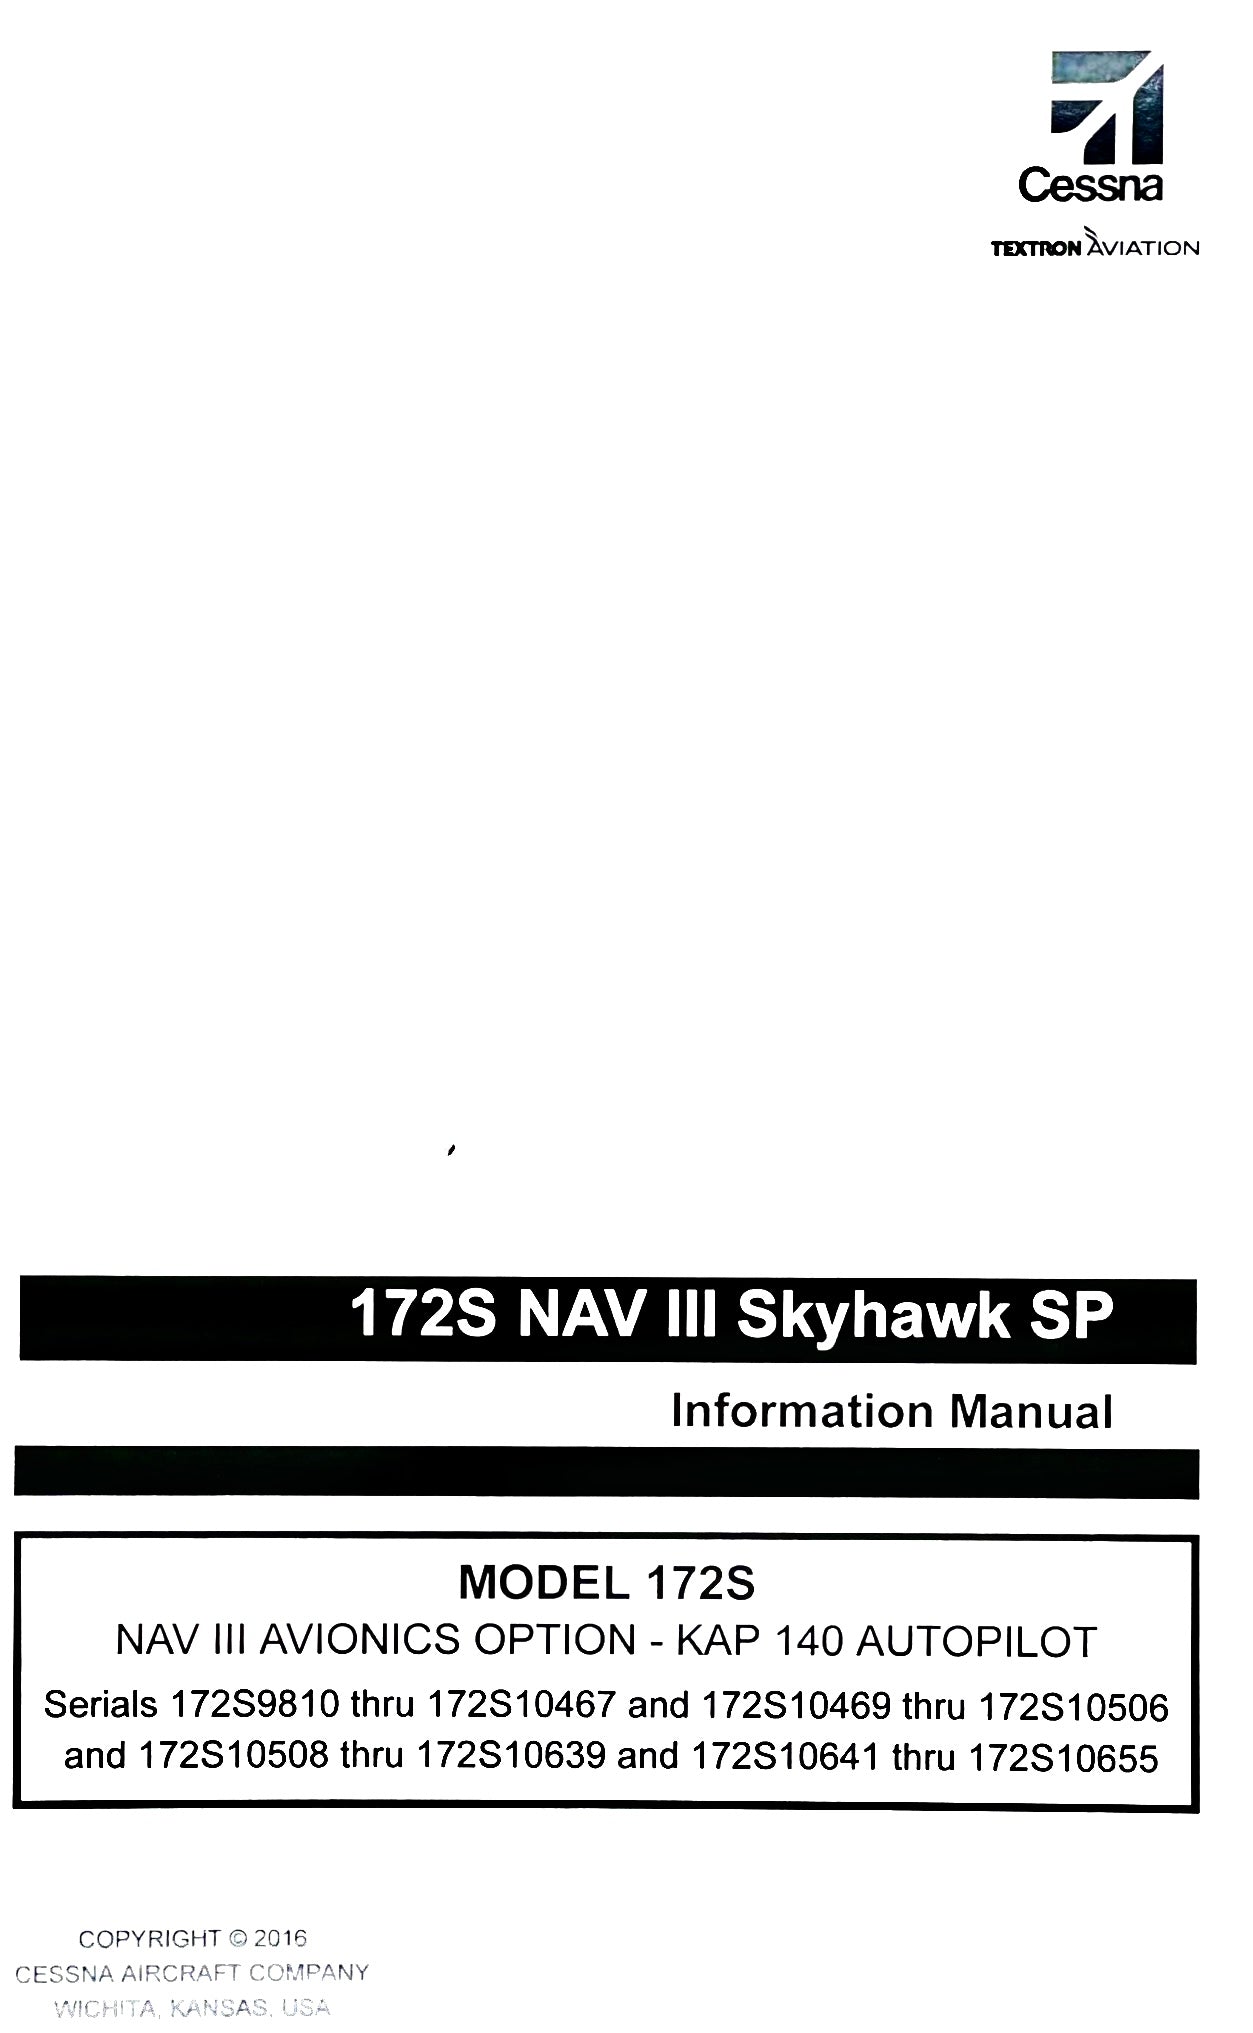 Cessna 172 SIM NAV III Pilot’s Operating Handbook